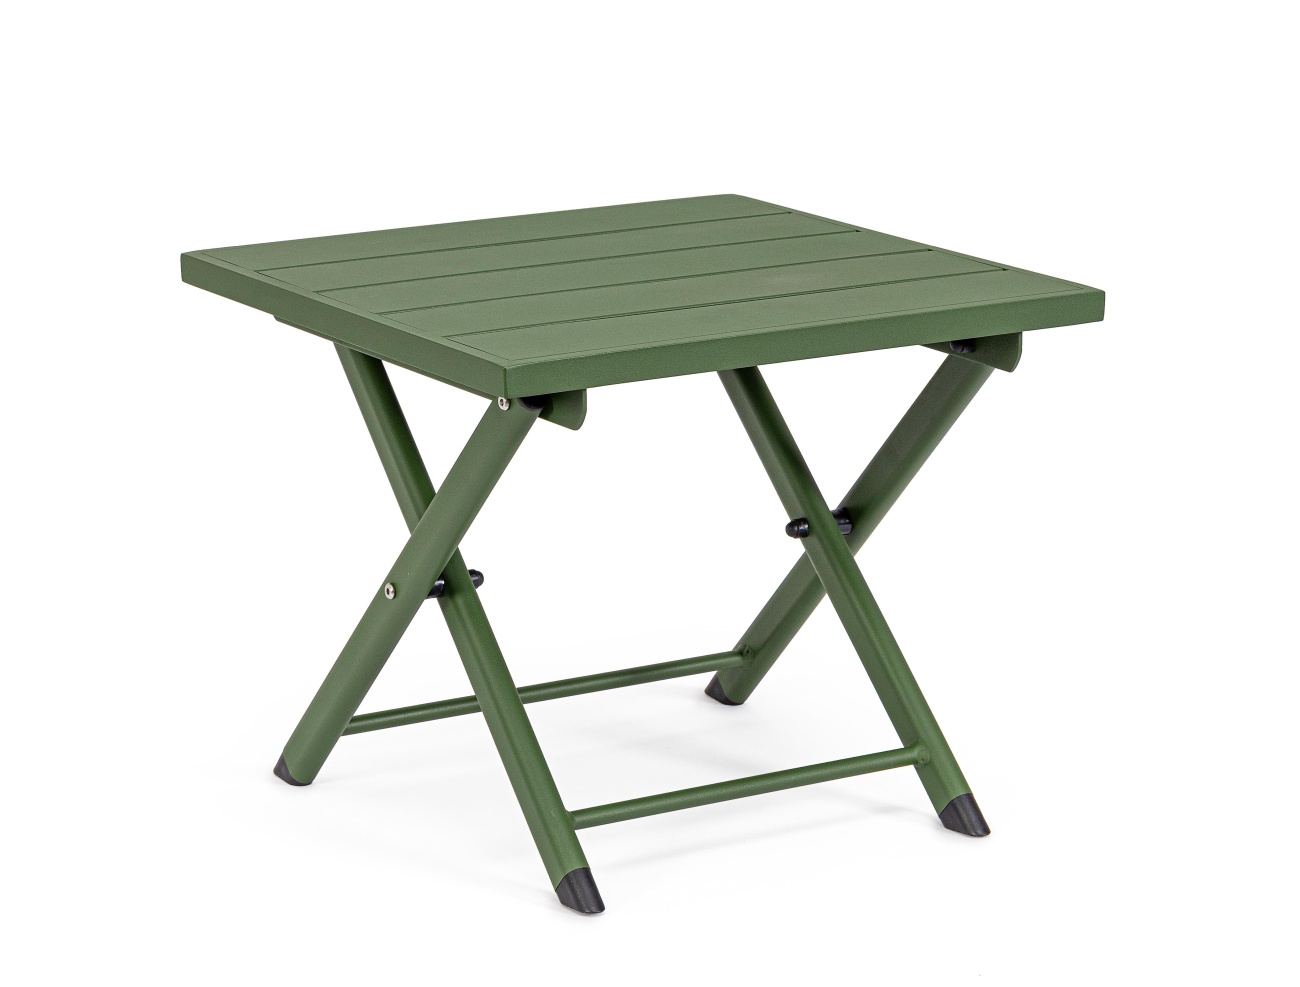 Der Gartenbeistelltisch Taylor überzeugt mit seinem modernen Design. Gefertigt wurde er aus Aluminium, welches einen grünen Farbton besitzt. Das Gestell ist auch aus Aluminium. Der Tisch besitzt eine Größe von 44x43 cm. Der Tisch ist klappbar.